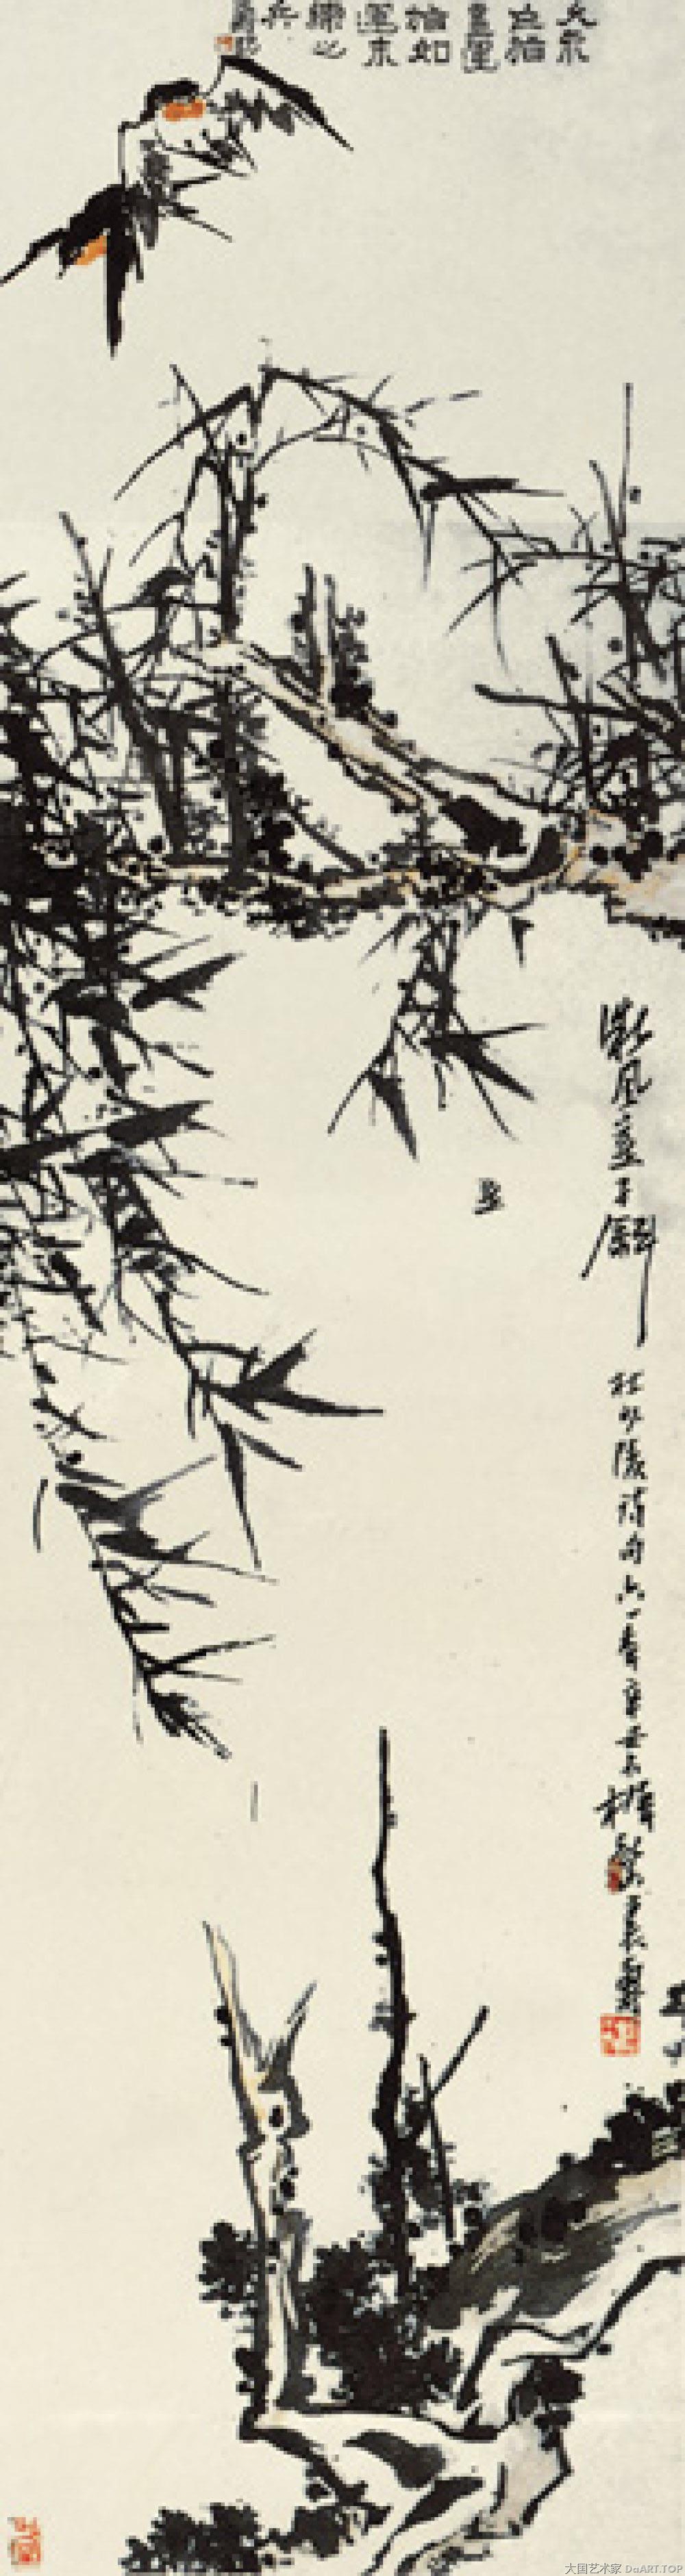 大国艺术家 艺术家 中国艺术家《微风燕子图》近代潘天寿纸本设色指画